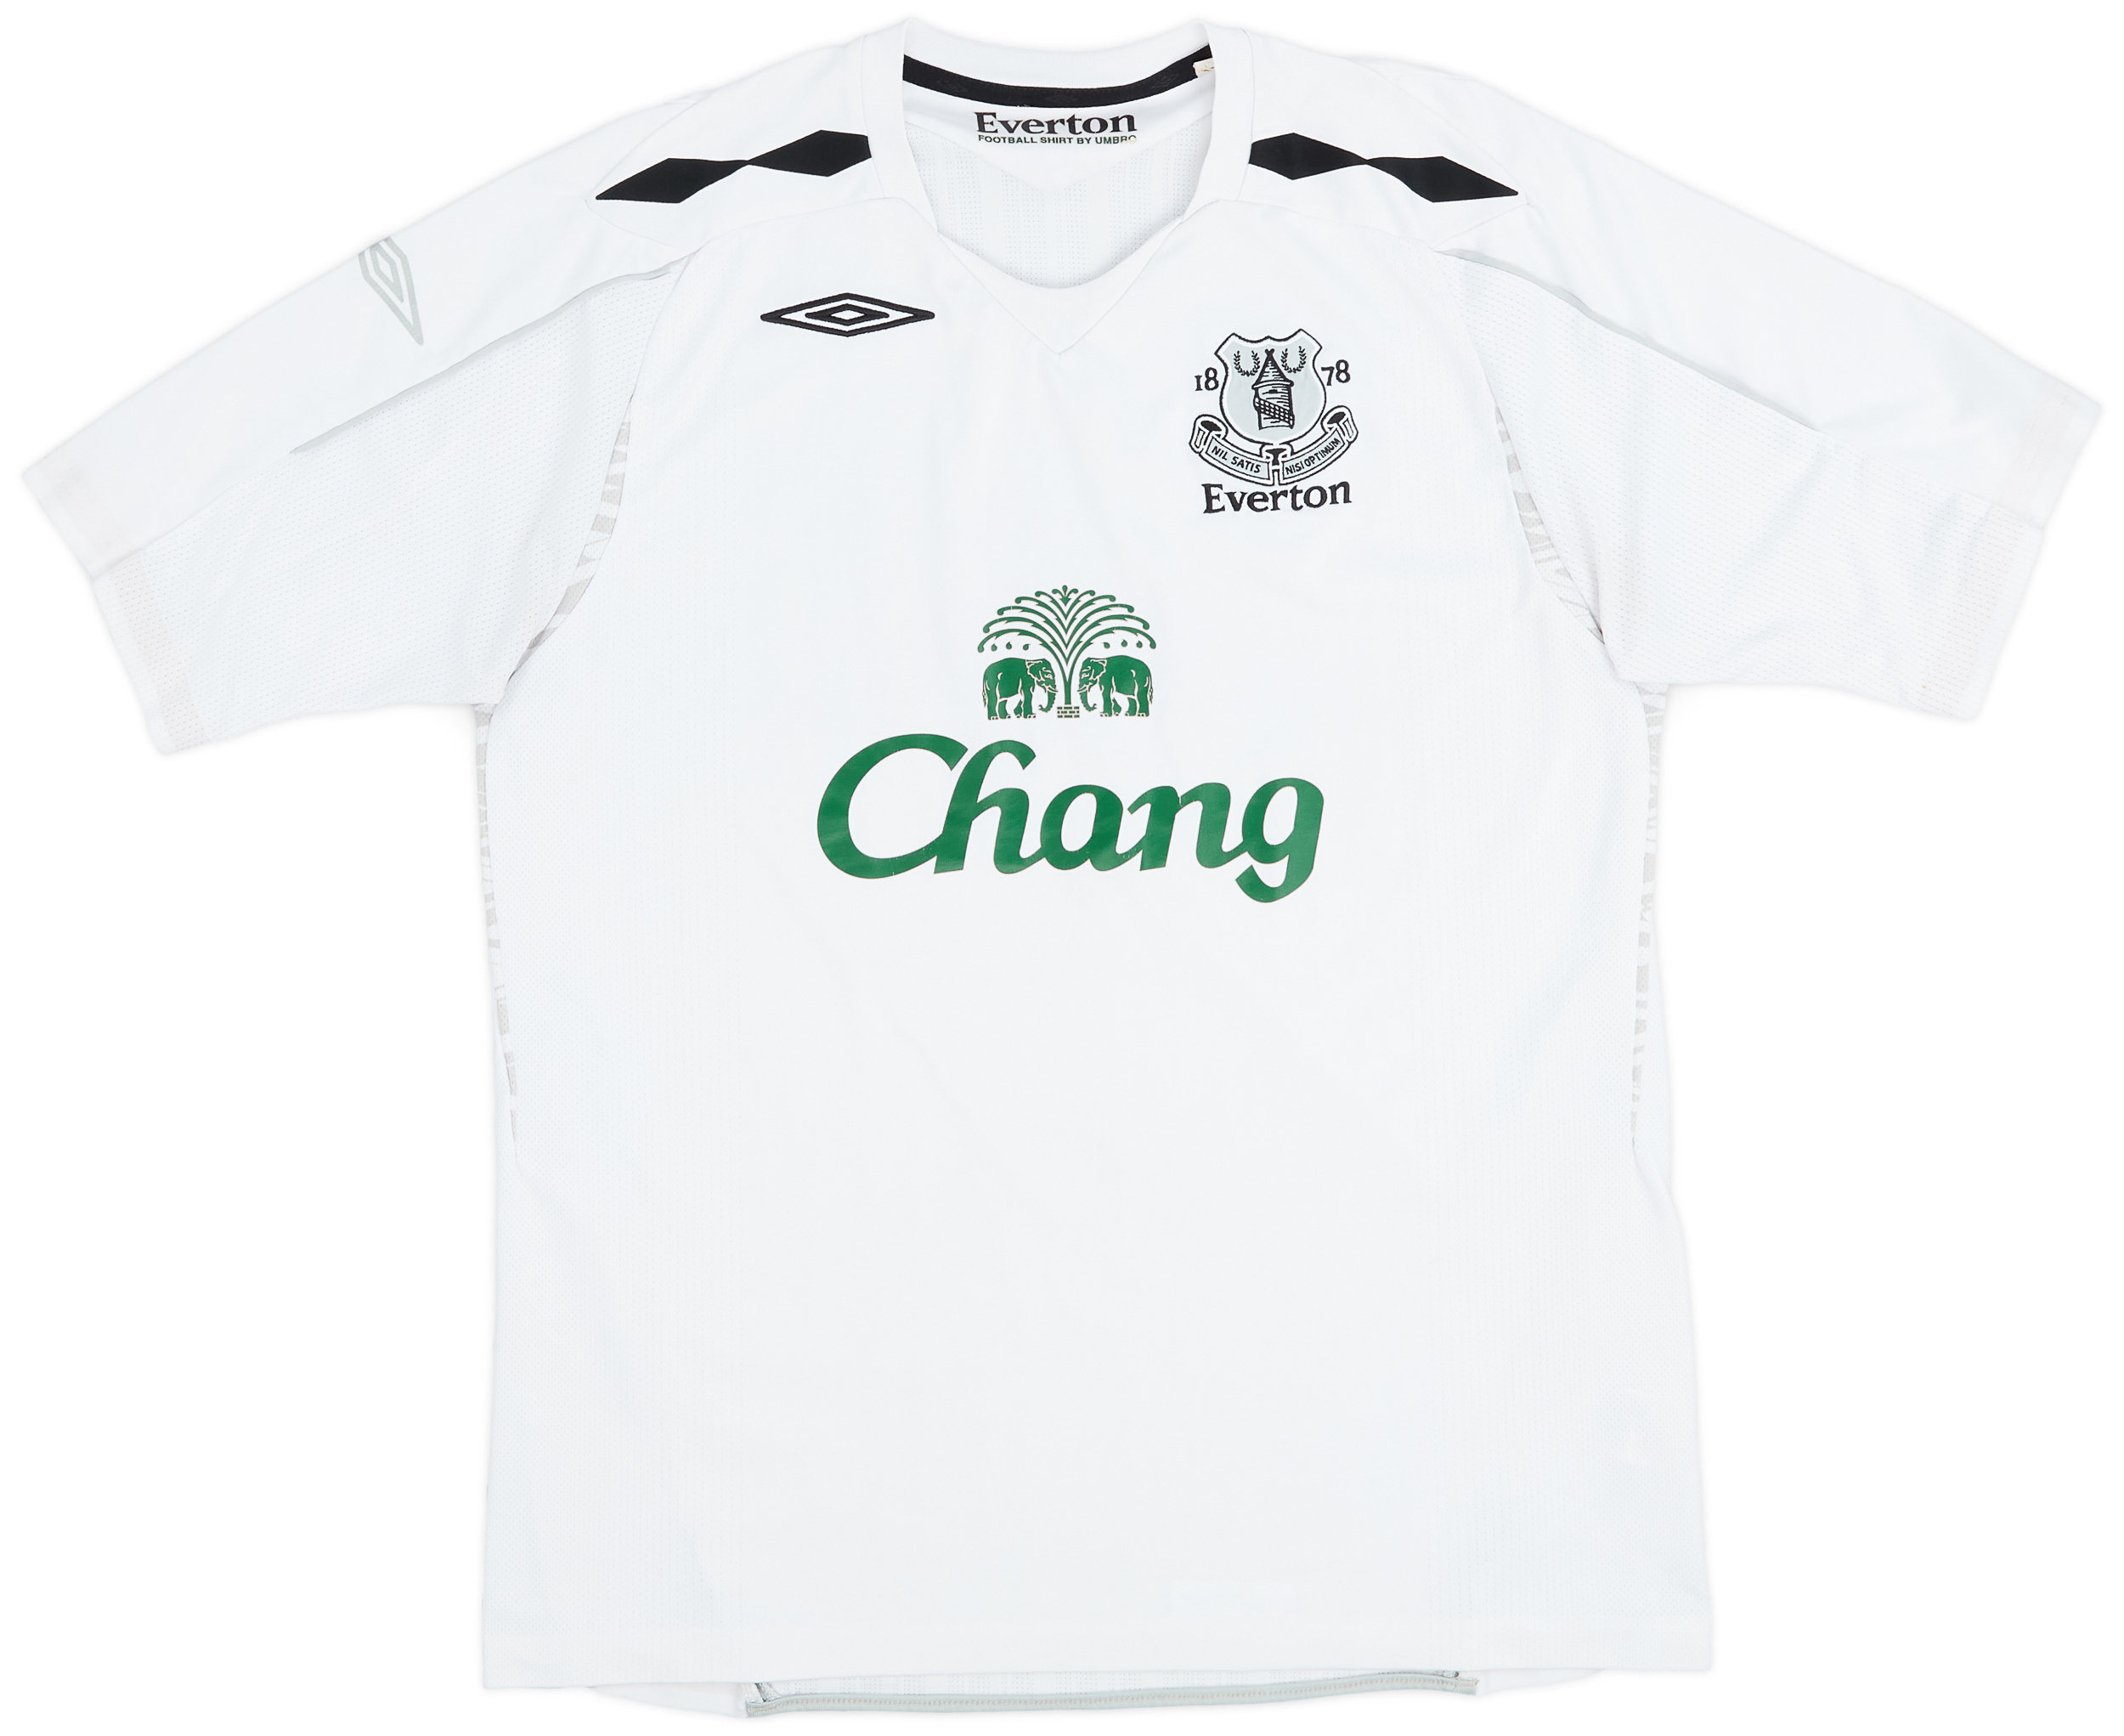 2007-08 Everton Away Shirt - 9/10 - ()